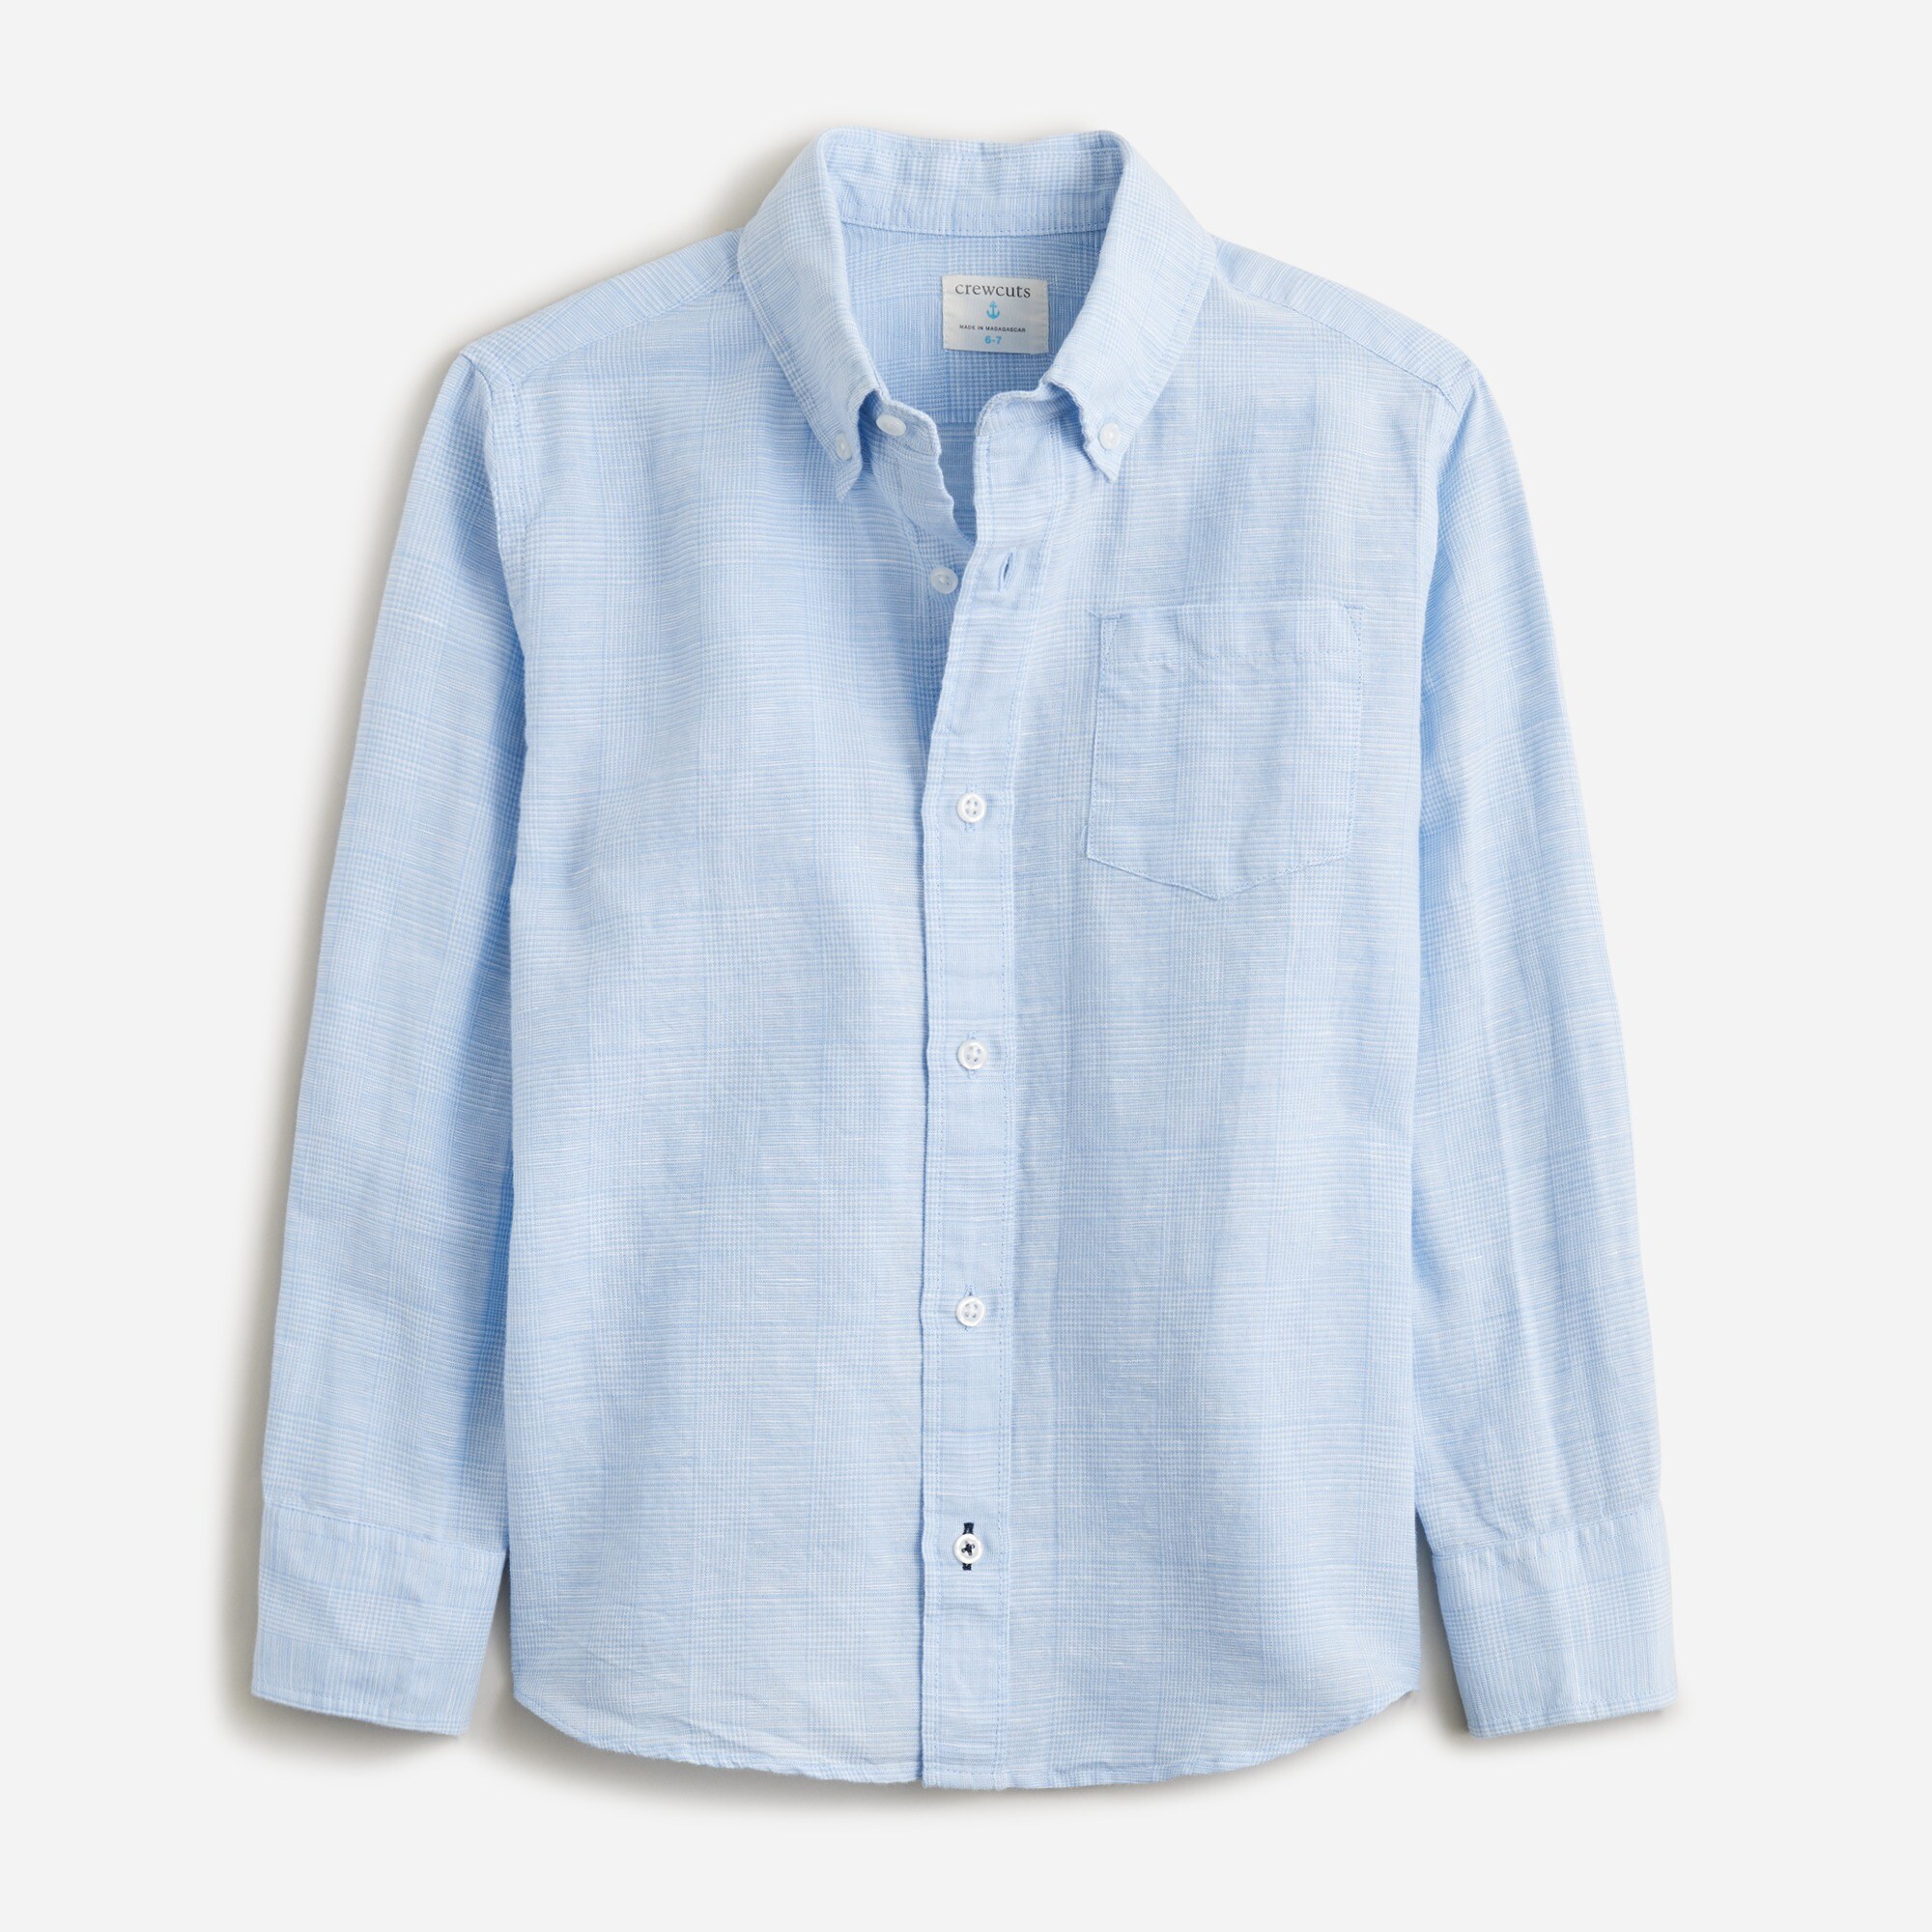  Kids' button-down linen-blend shirt